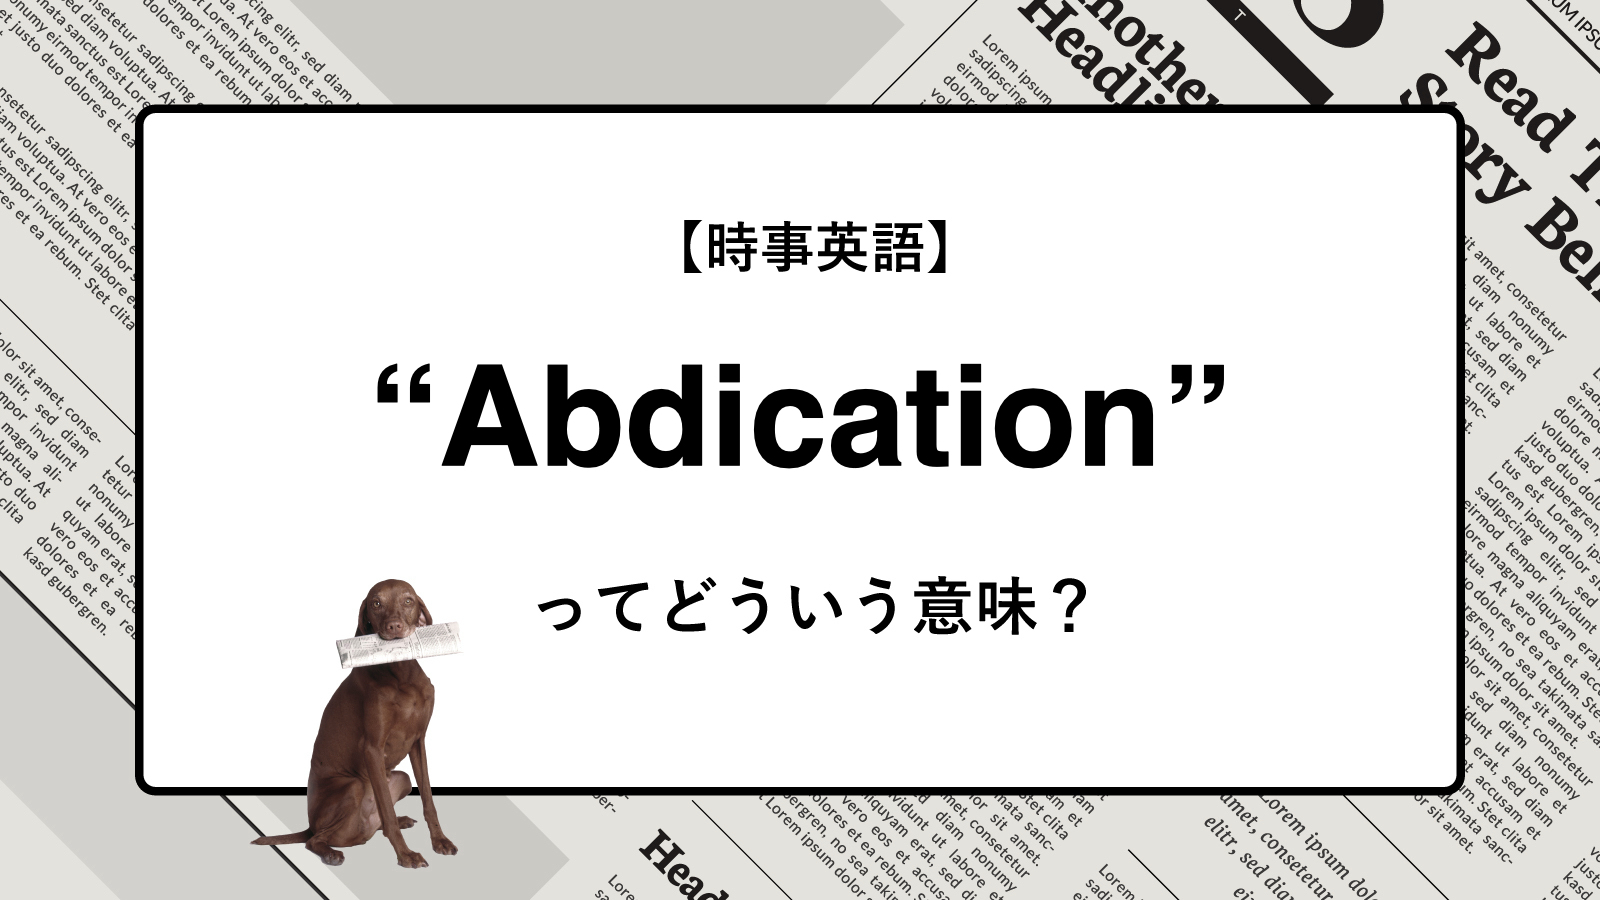 【時事英語】“Abdication” ってどういう意味？ | ニュースの「キーワード」で語彙力を身につける